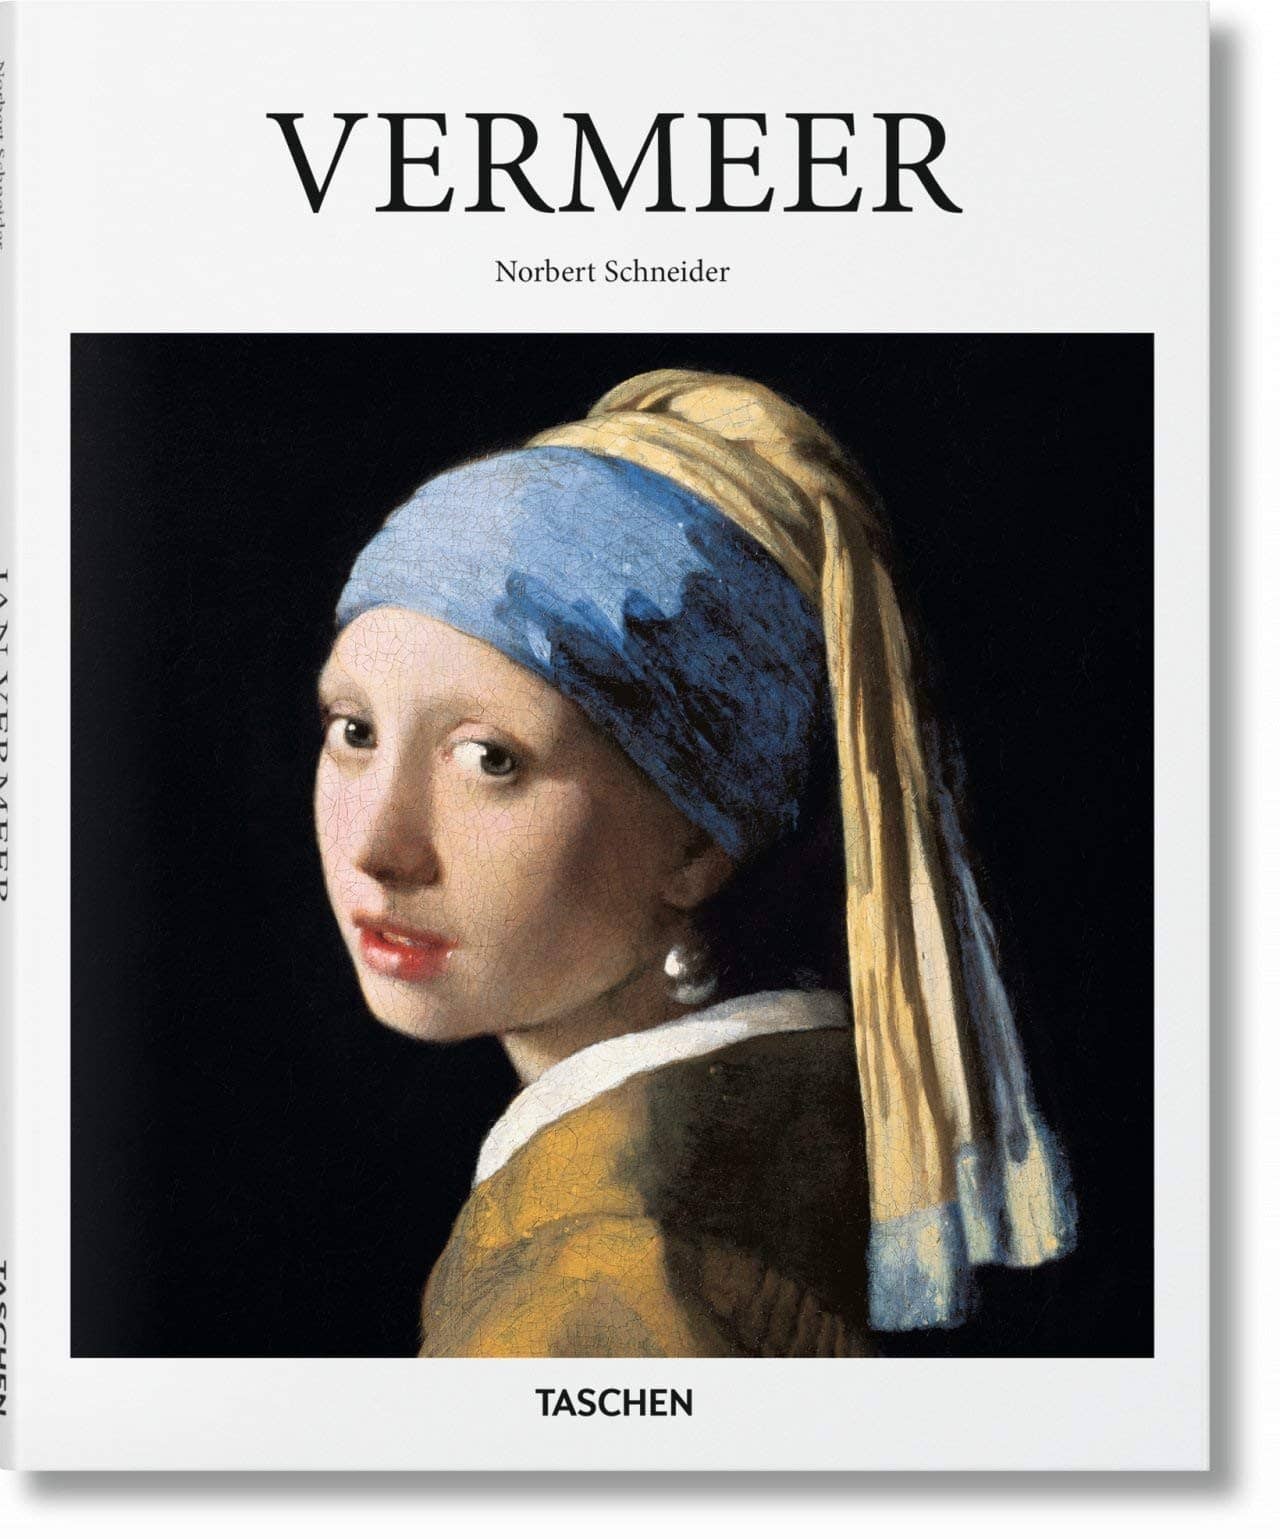 2996-vermeer-71mlgkaznal-jpg-71mlgkaznal